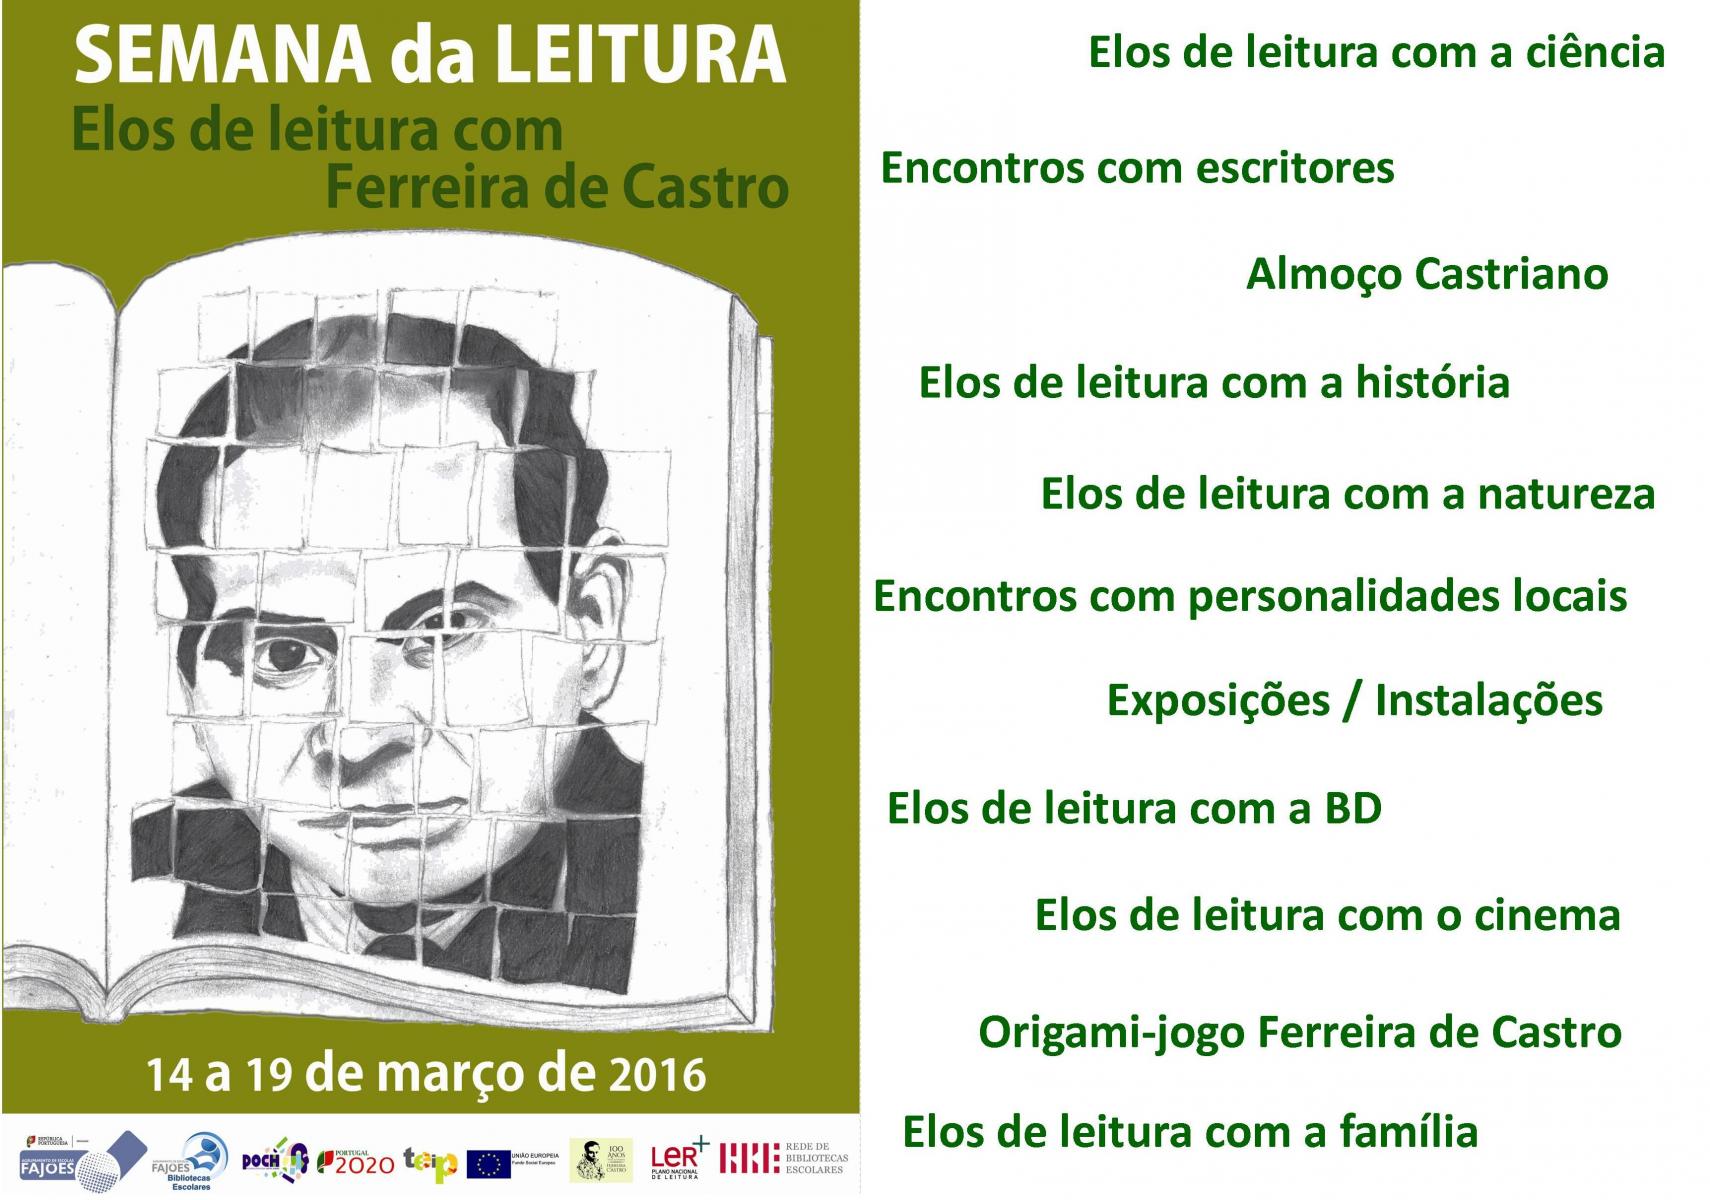 Semana da Leitura 2016 - Elos de Leitura com Ferreira de Castro